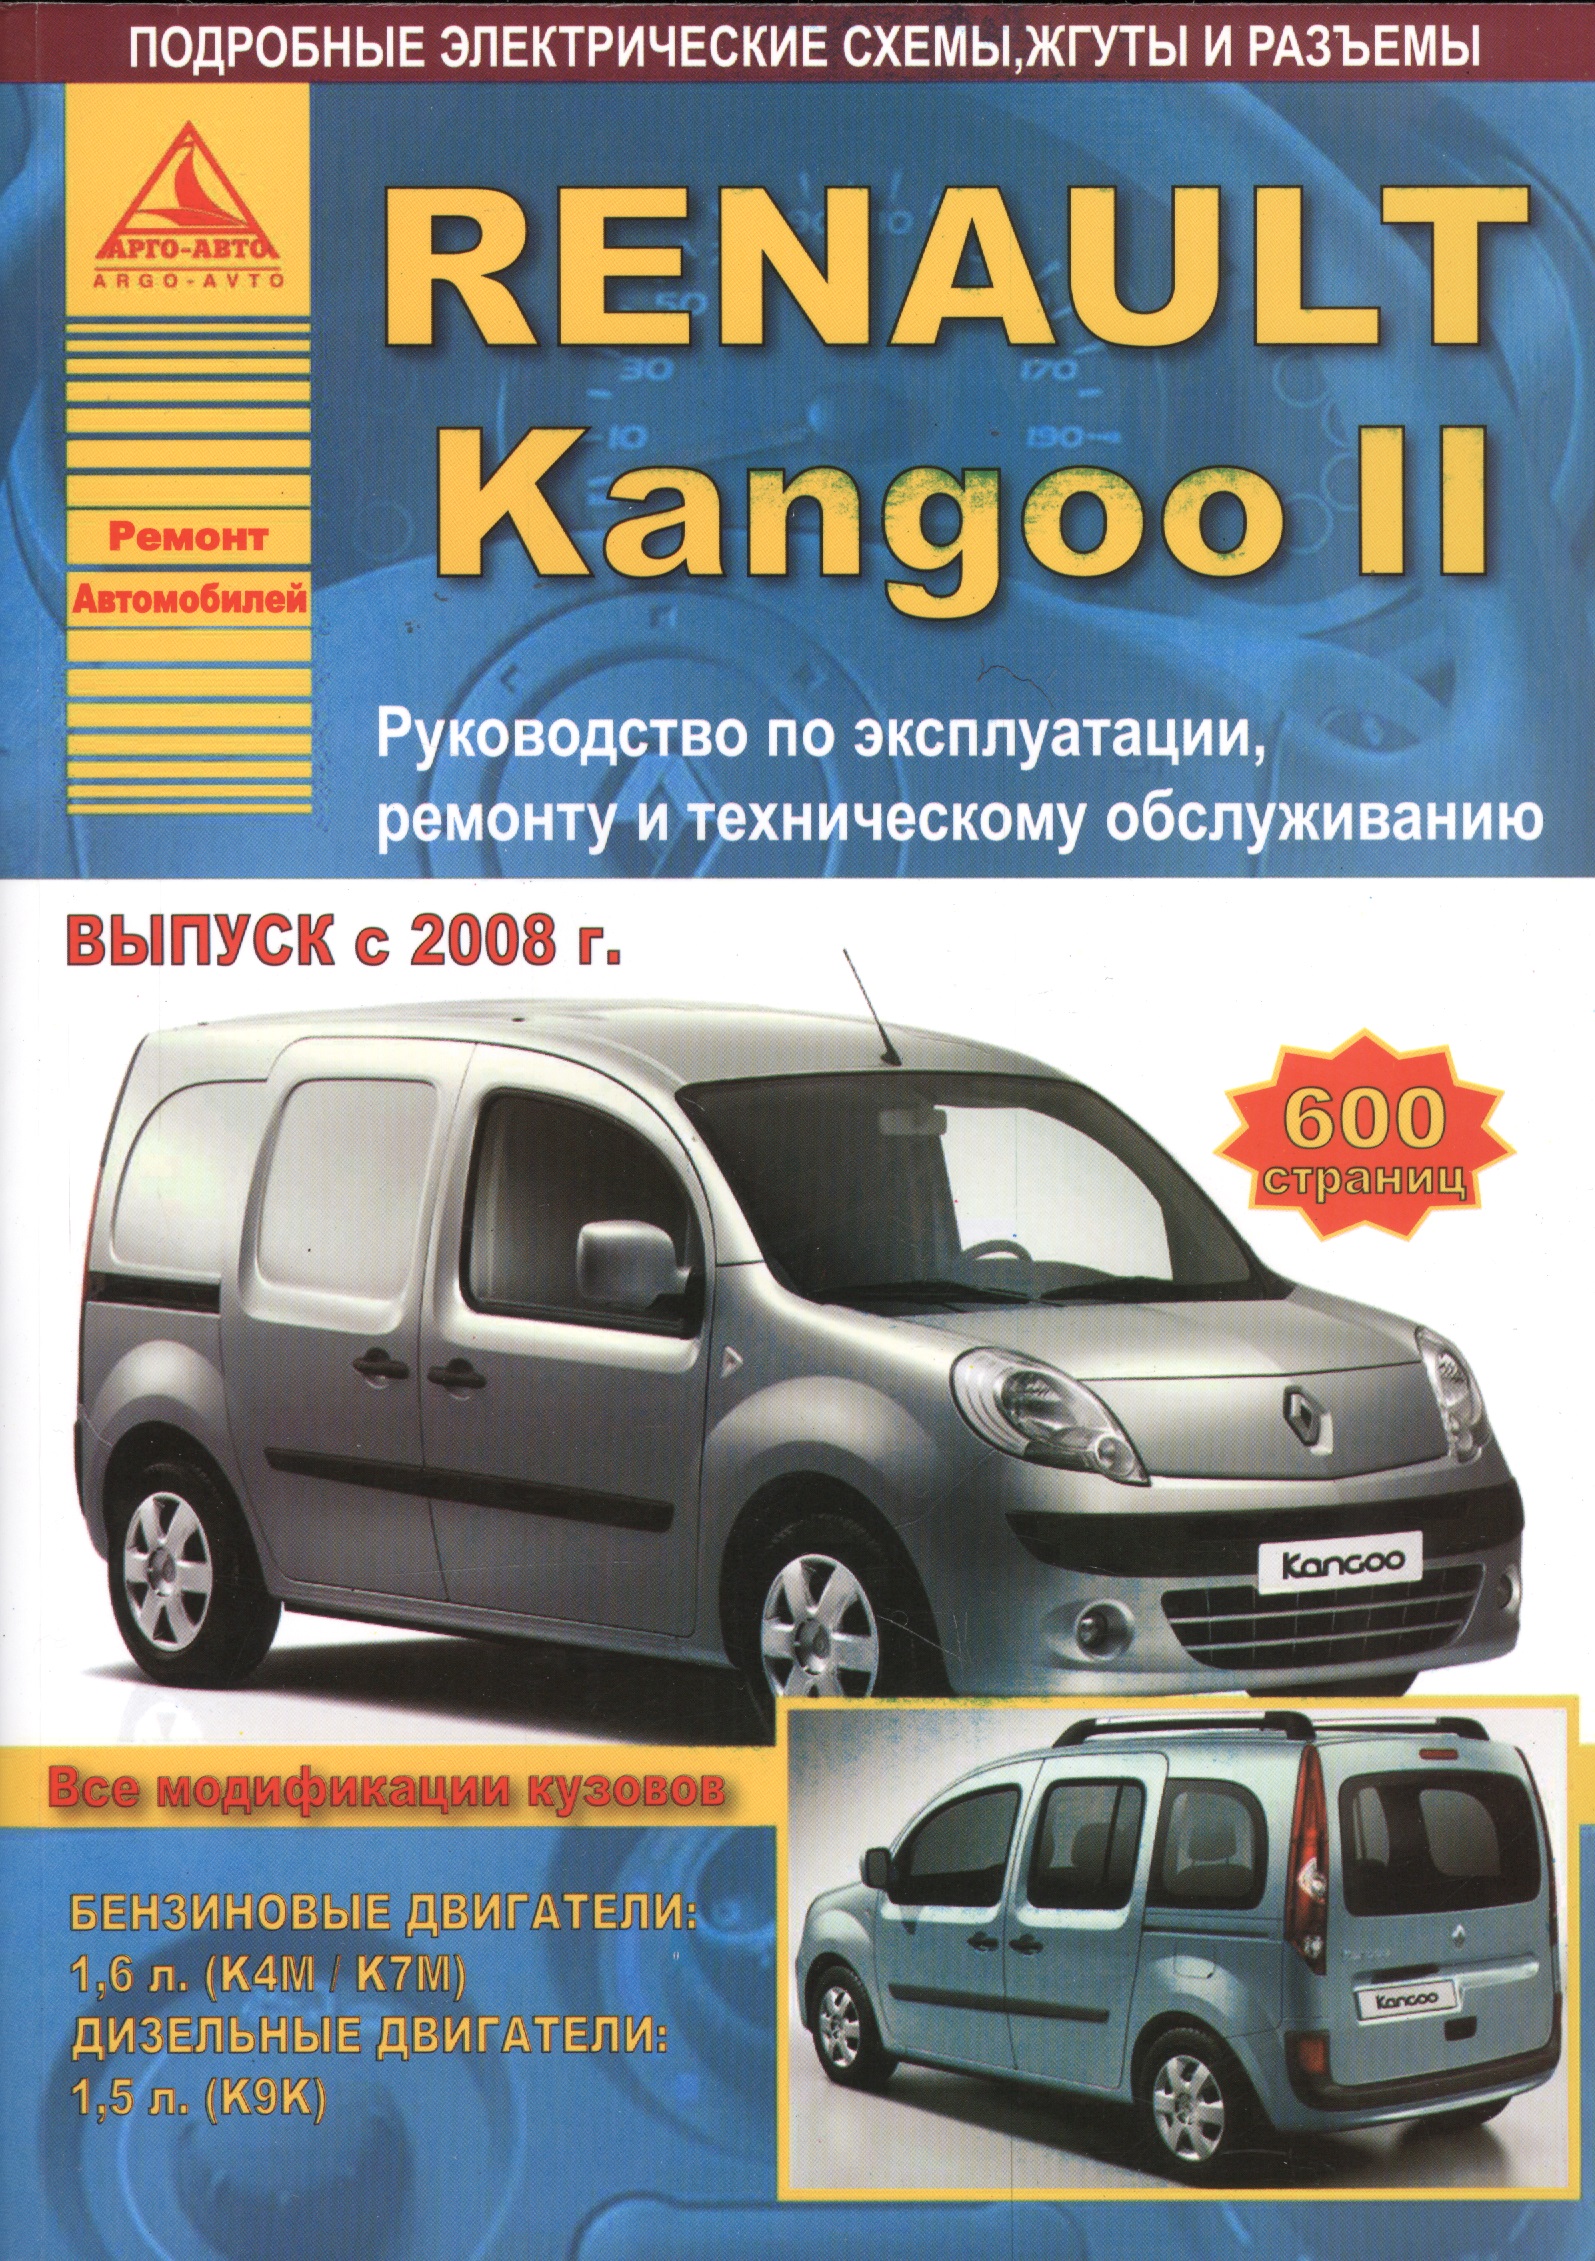 Renault Kangoo II. Руководство по эксплуатации, ремонту и техническому обслуживанию. Выпуск с 2008 г. Бензиновые двигатели: 1,6 л. (К4М/К7М). Дизельные двигатели: 1,5 л. (К9К) 8201590627 проволочный assy руль для renault clio mk iii modus kangoo ii